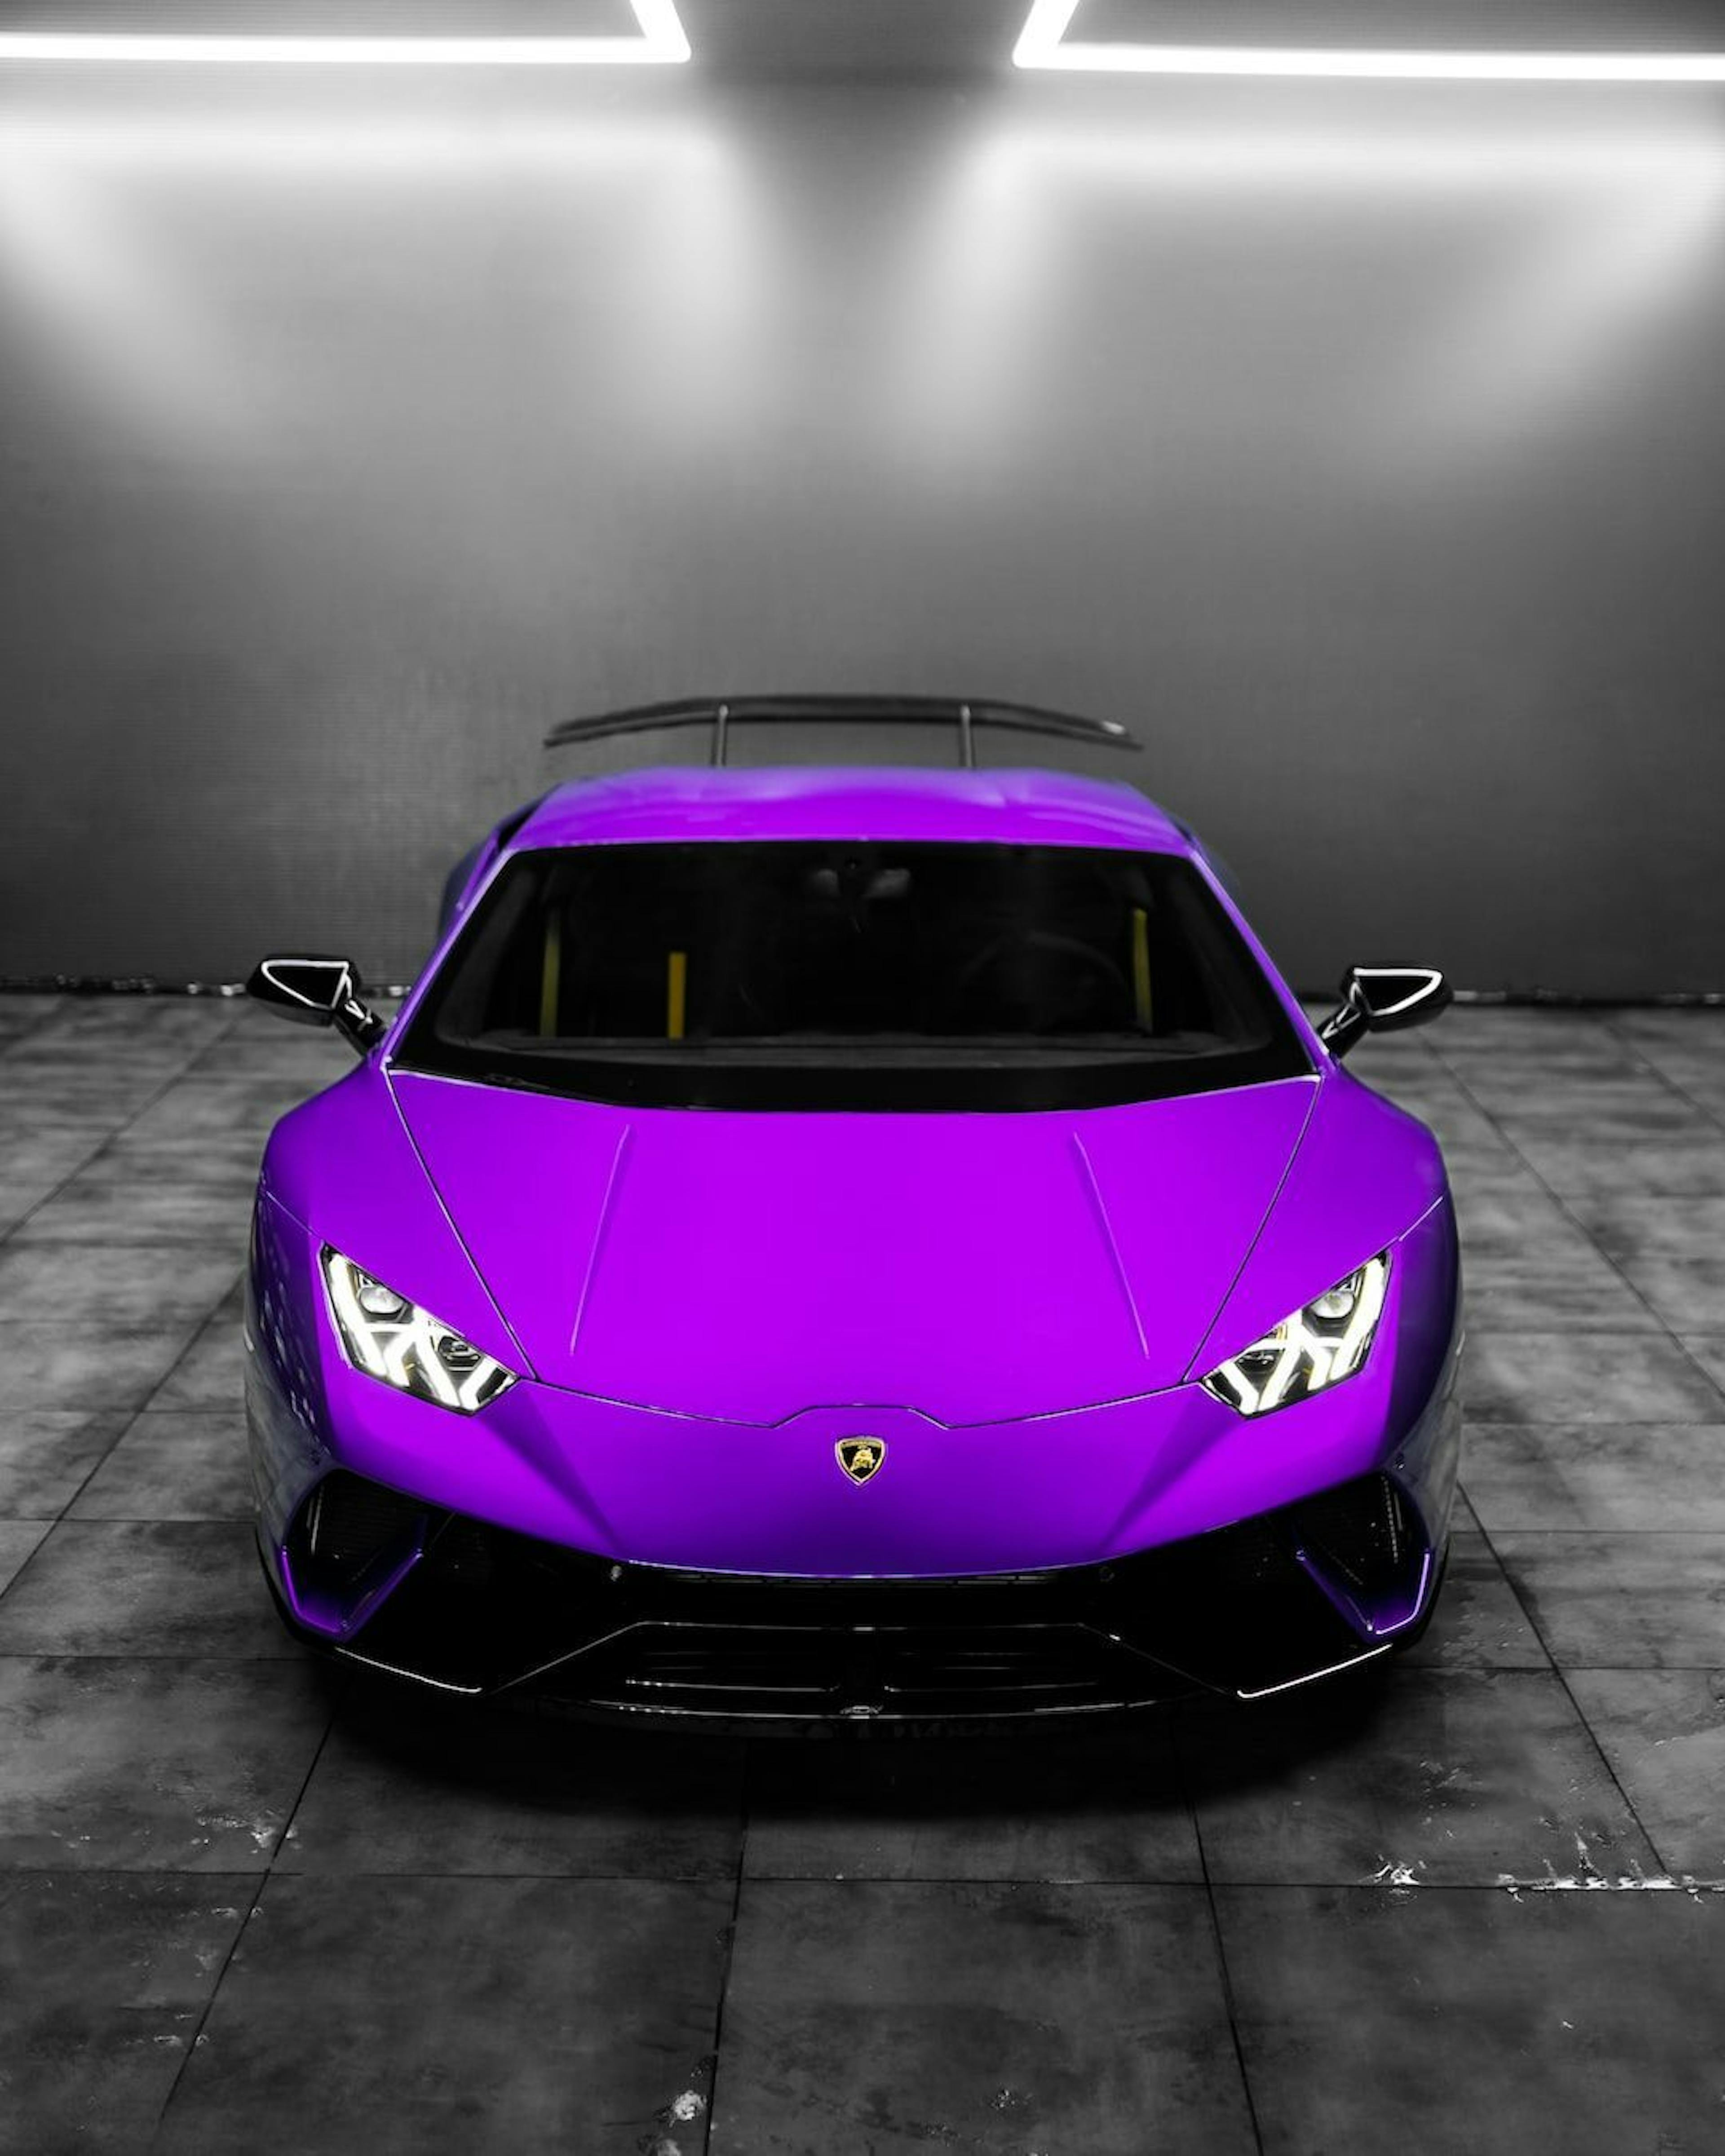 featured image - $PEPE, một chiếc Lamborghini màu tím và hơn thế nữa: Câu chuyện vẫn tiếp tục